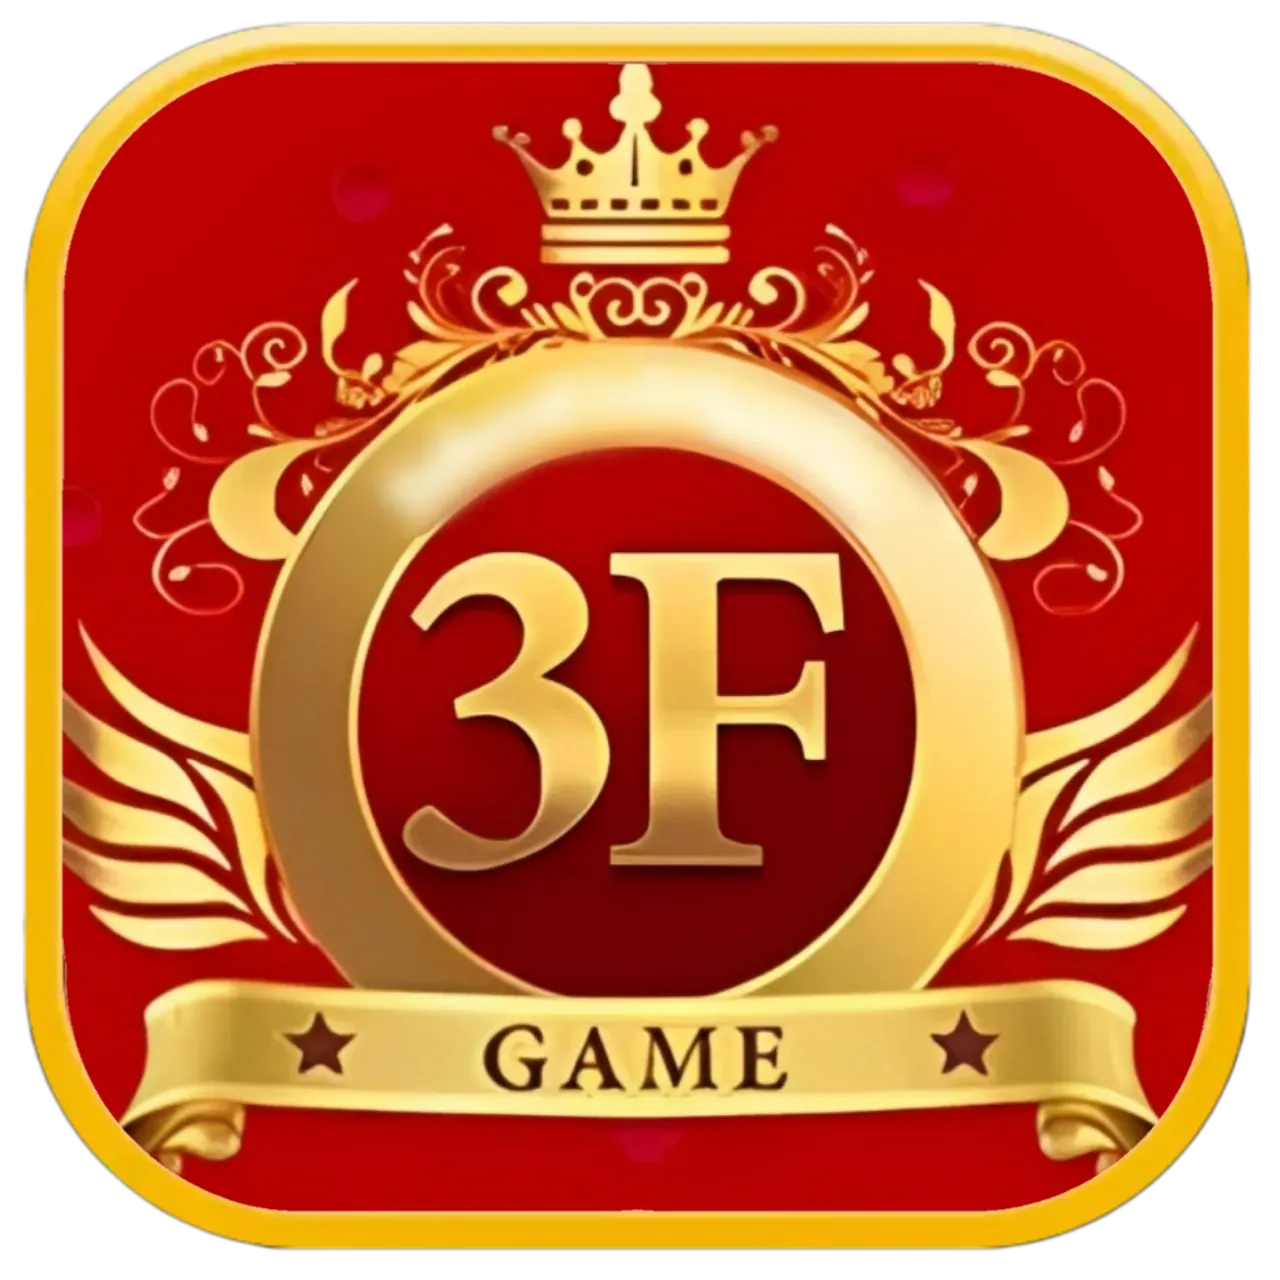 game,game 3f,3f game,new game,#game3f,gamedev,game dev,game 3 app,gameplay,game 3f app,game 3f apk,crash game,3f game app,3f game apk,game prank,game 3f game,game engine